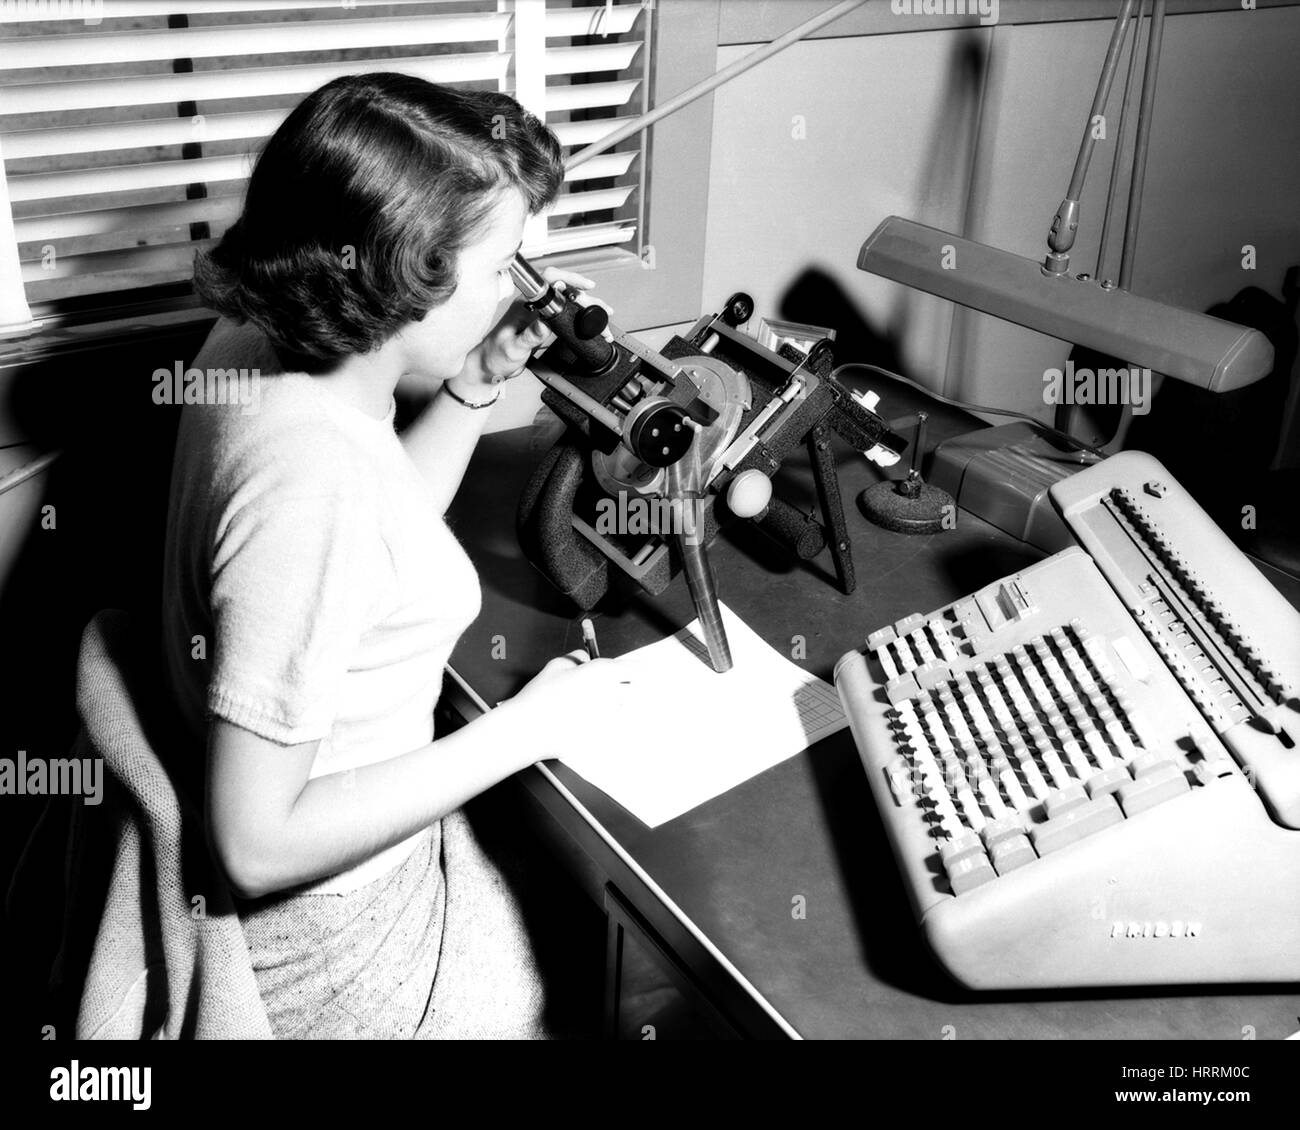 Una femmina la NASA/NACA 'computer umano' utilizza un Friden alla macchina di eseguire calcoli di matematica, Langley, Virginia, 1955. Immagine cortesia della NASA. Foto Stock